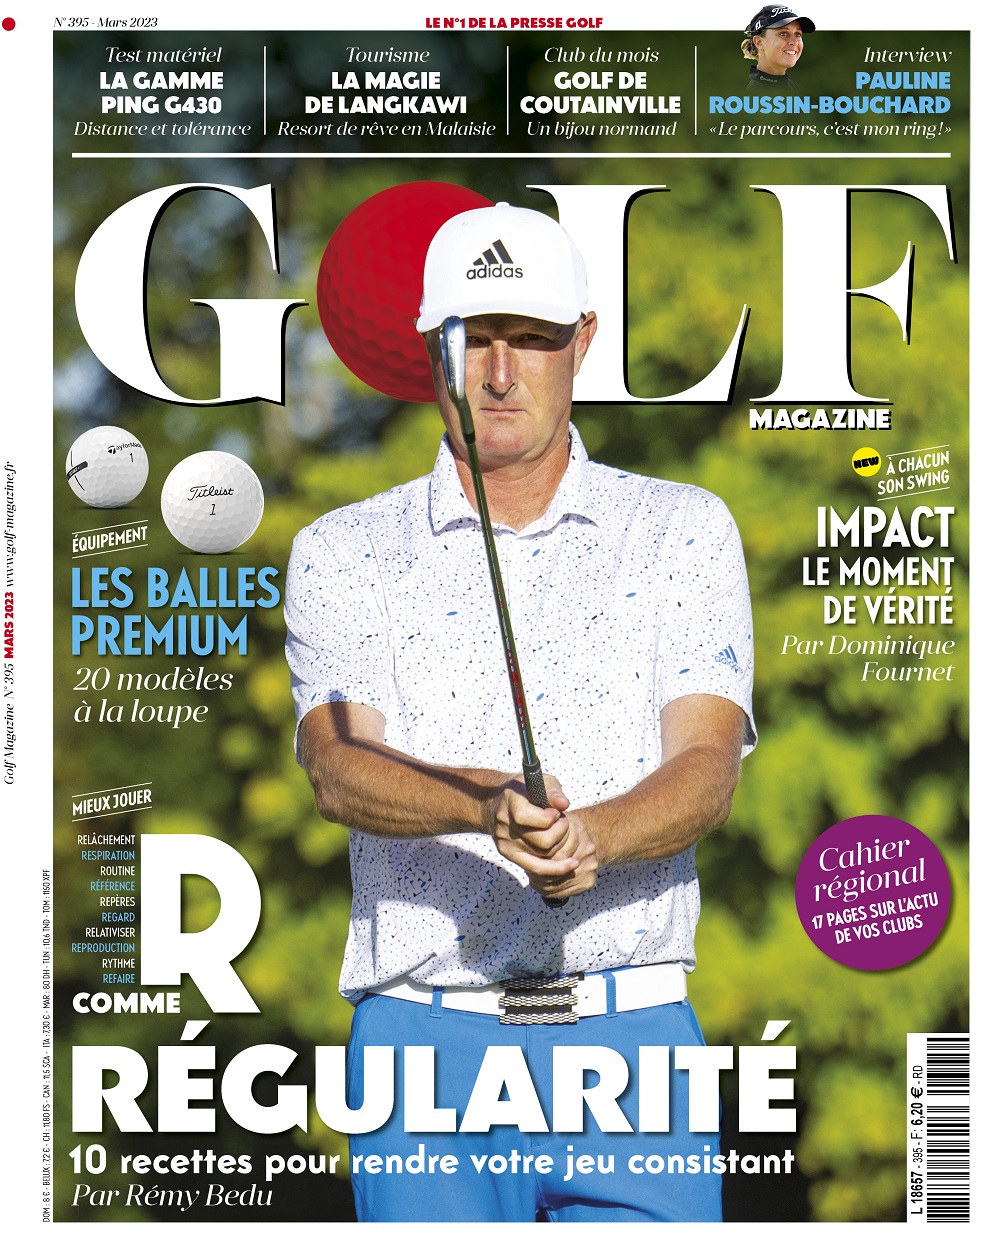 Le Golf Magazine n°395 est en kiosque !